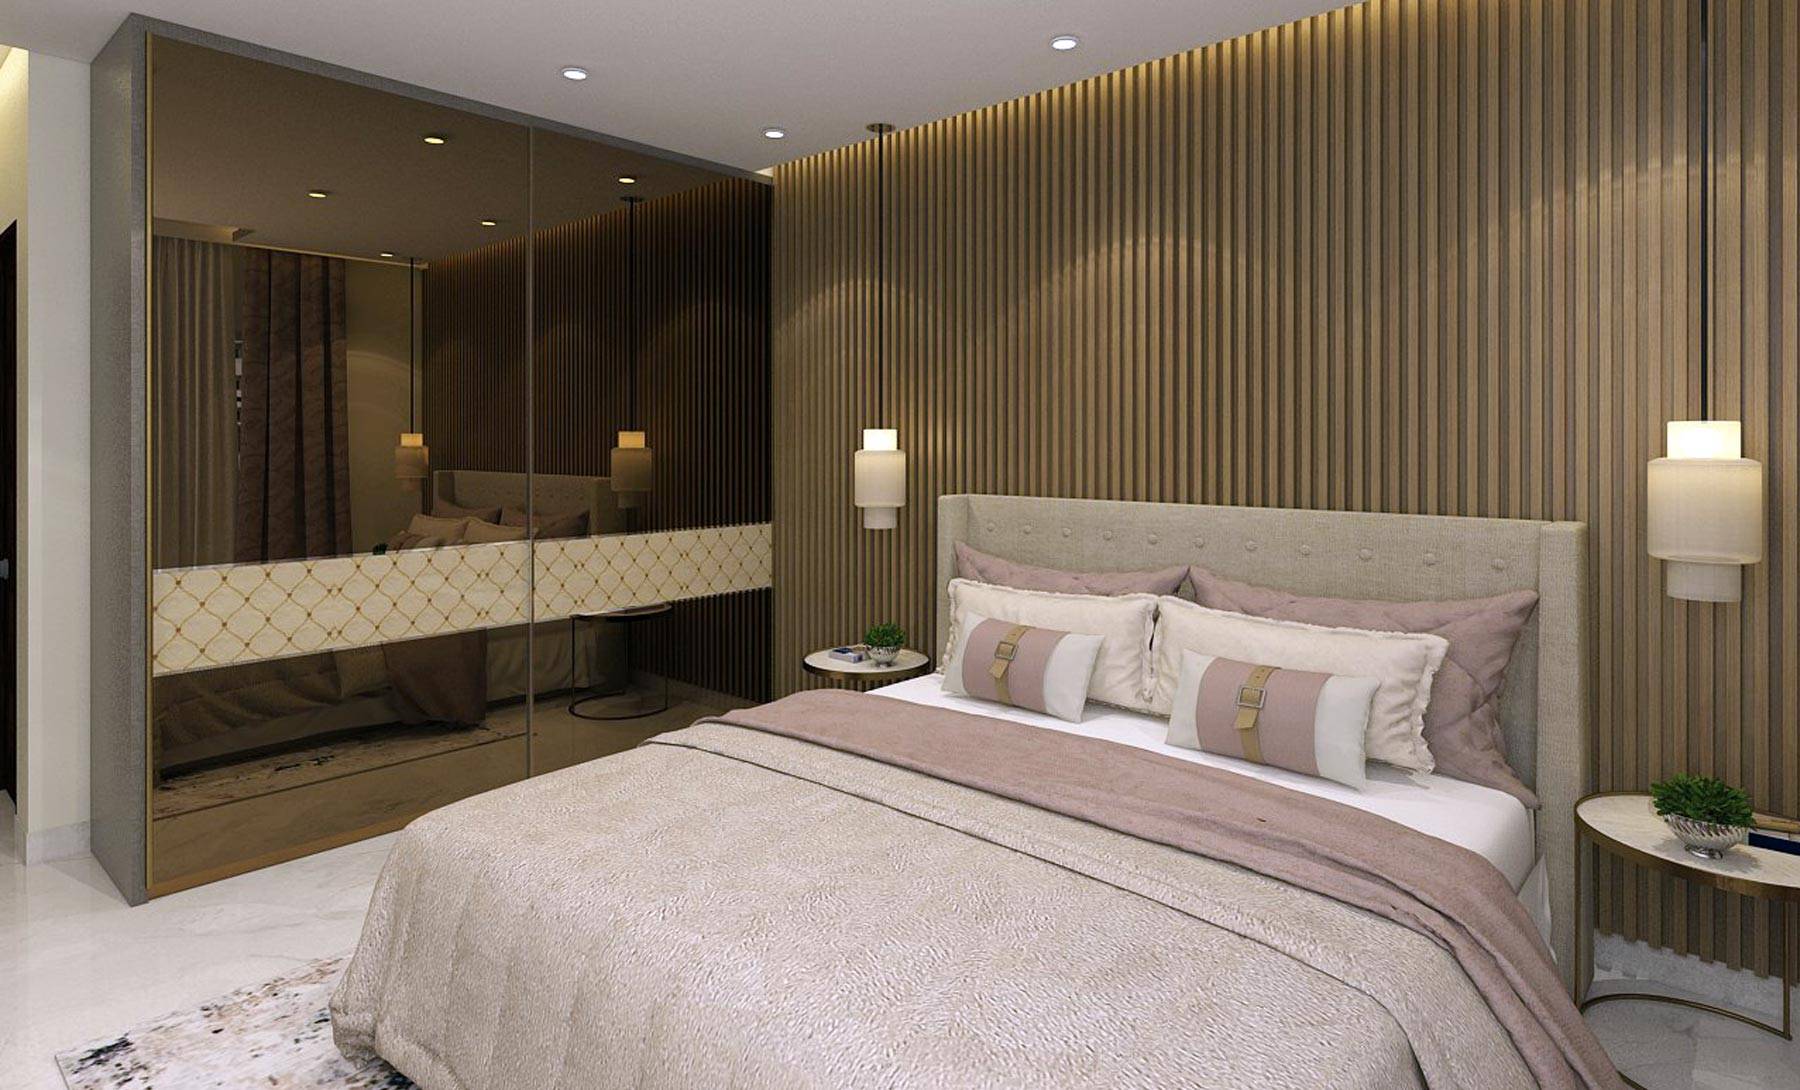 Kyrah Design, Master Bedroom Design